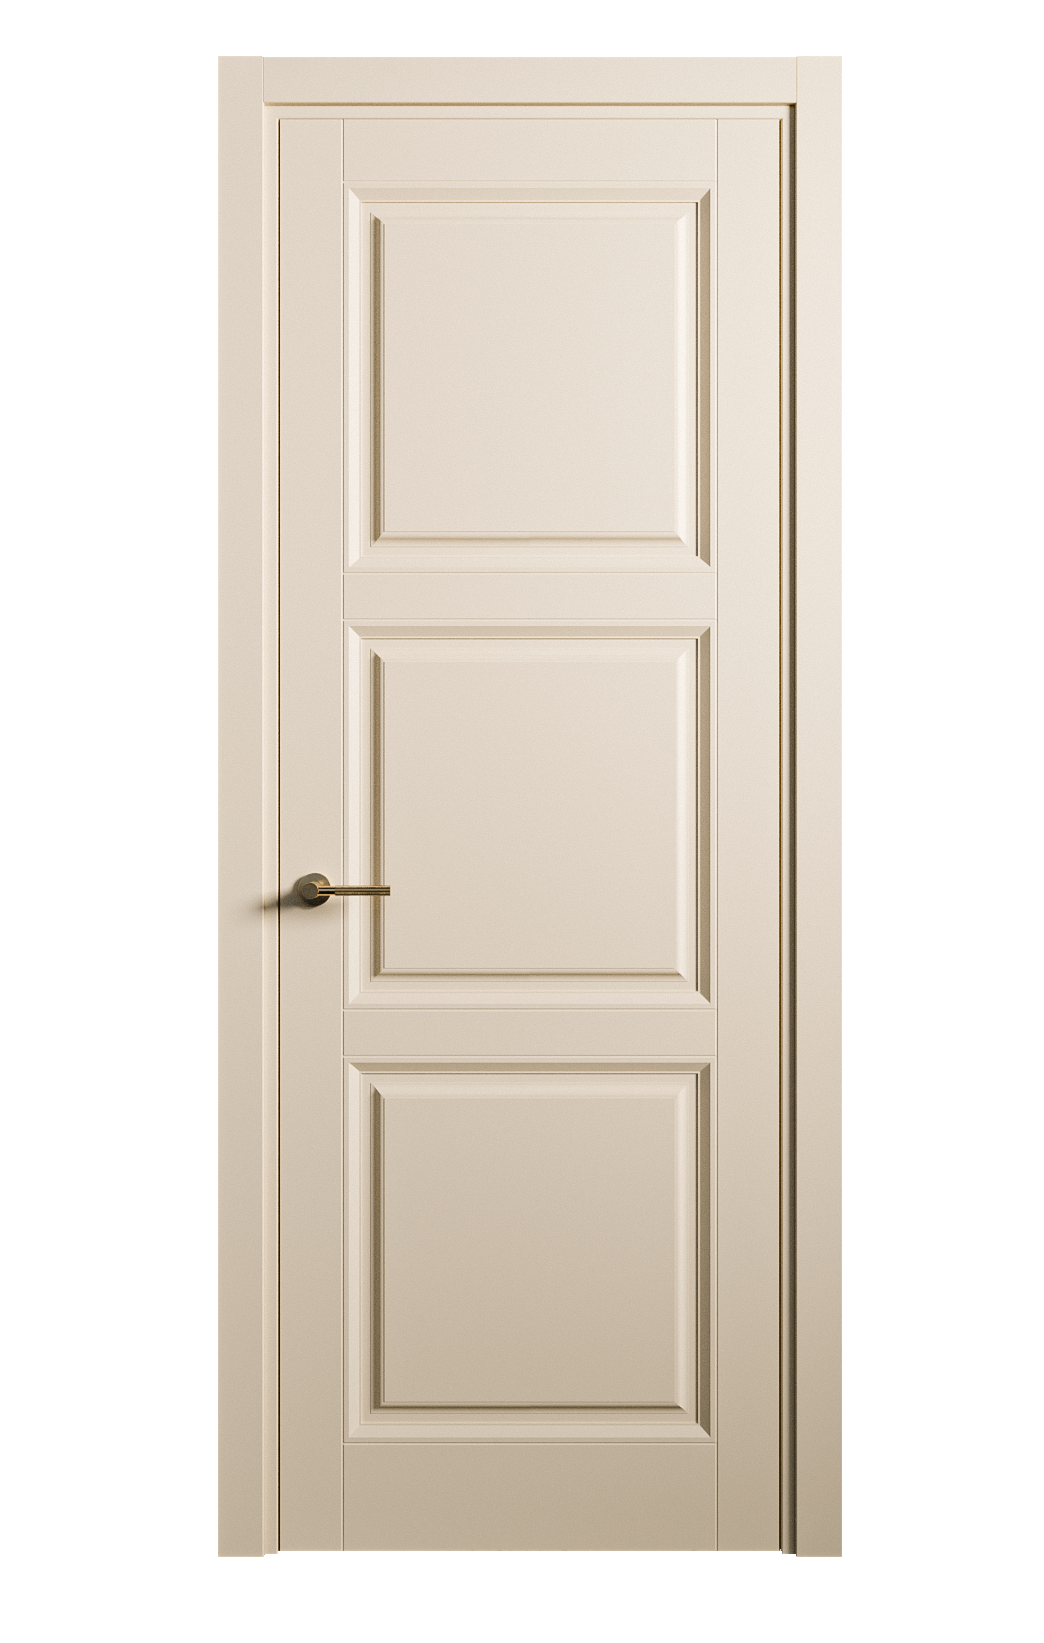 Межкомнатная дверь Venezia-3 глухая эмаль ral 1015 25752